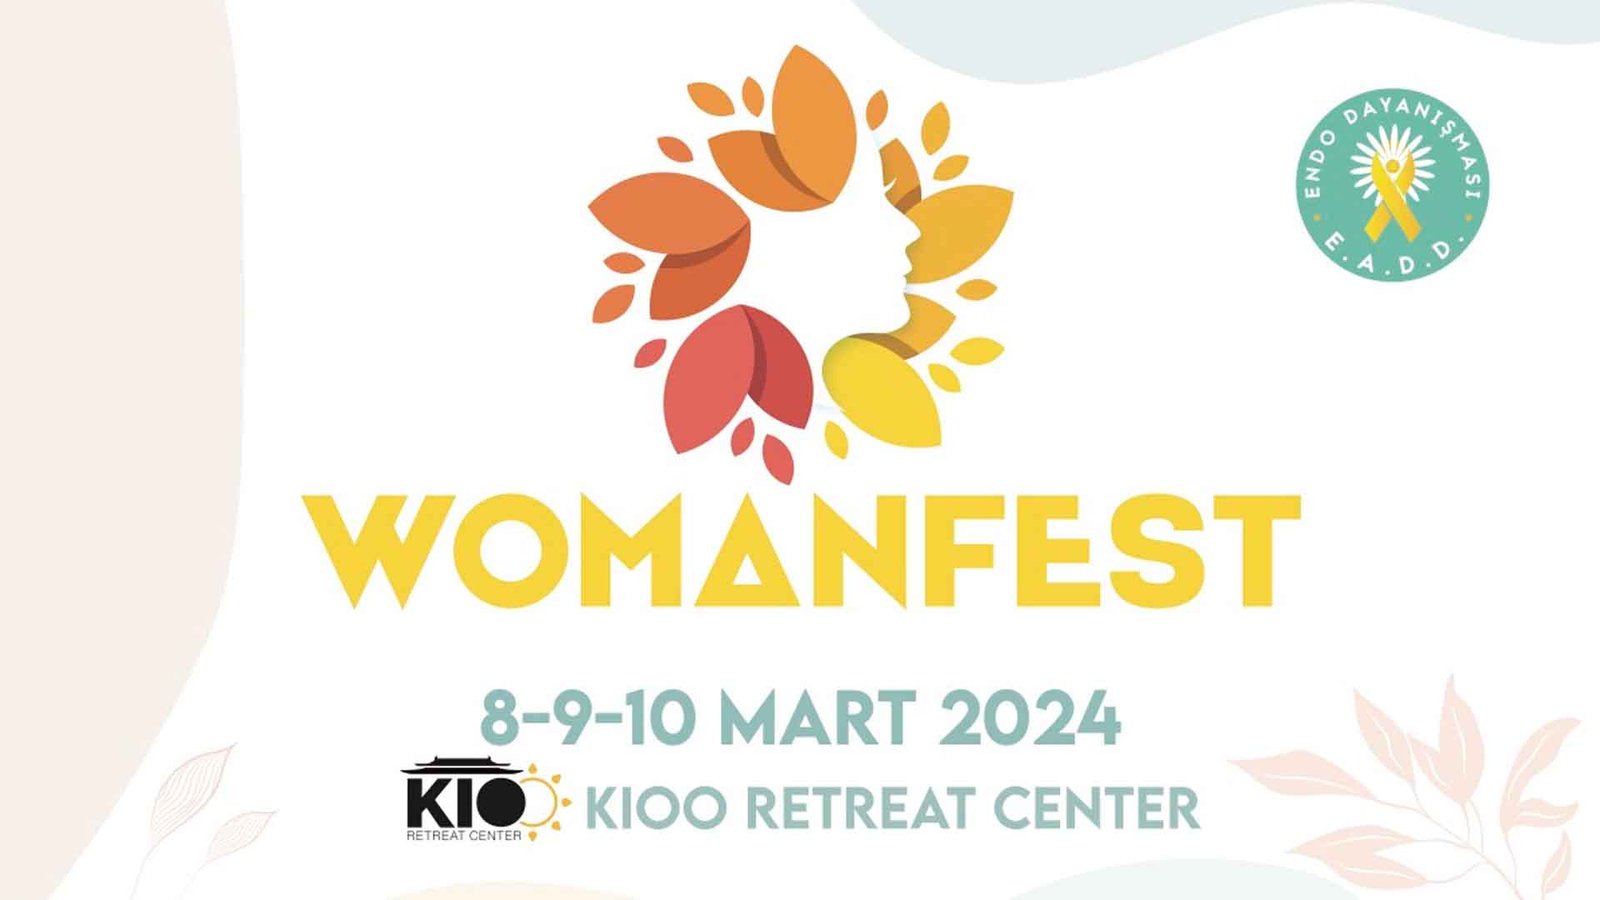 Endotürkiye'nin Womanfest'inde Kadın Sağlığı Ve Dayanışma